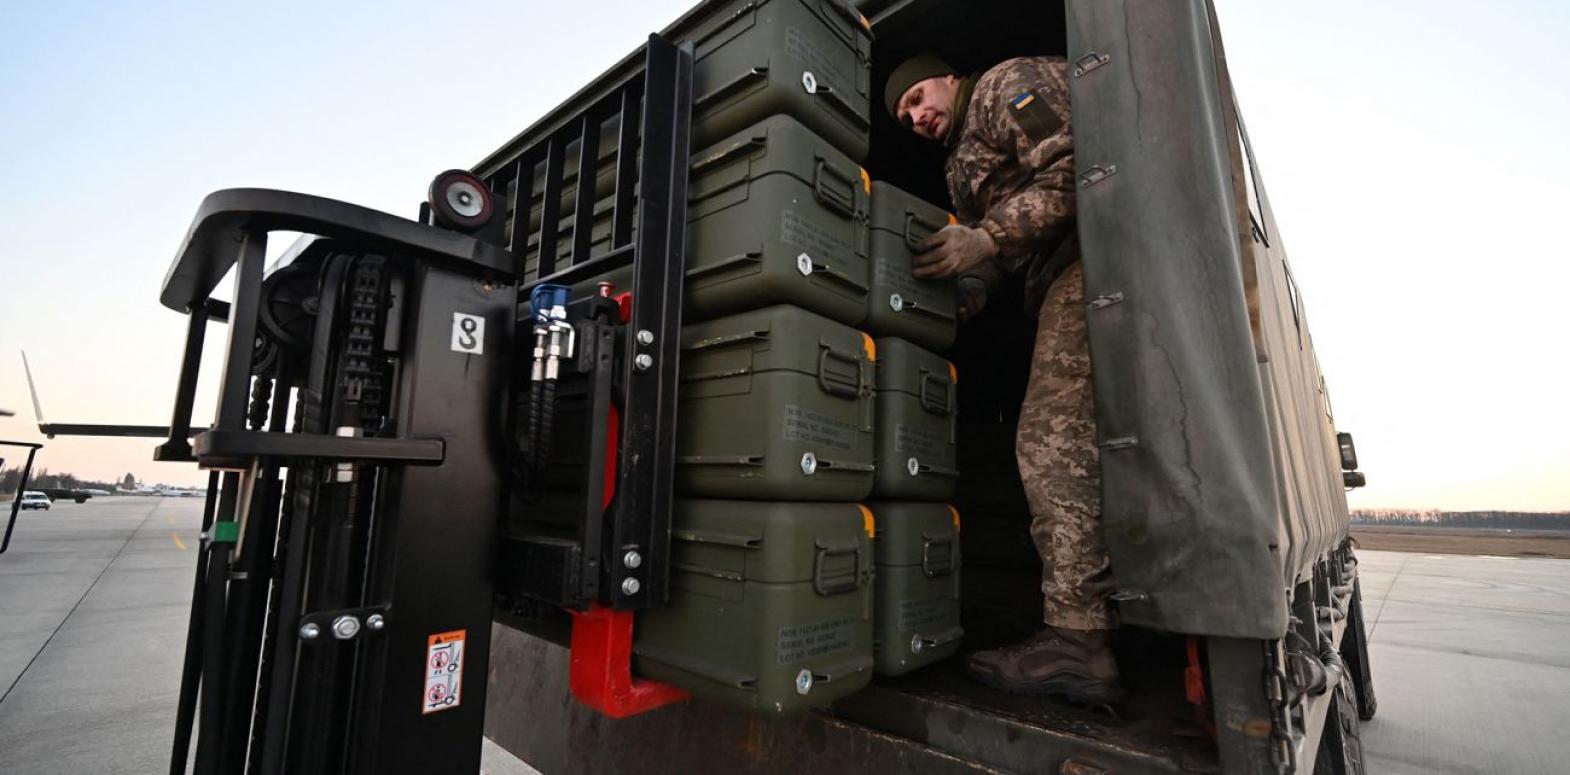 Польша усилила охрану главного хаба для военной помощи Украине из-за опасений диверсий